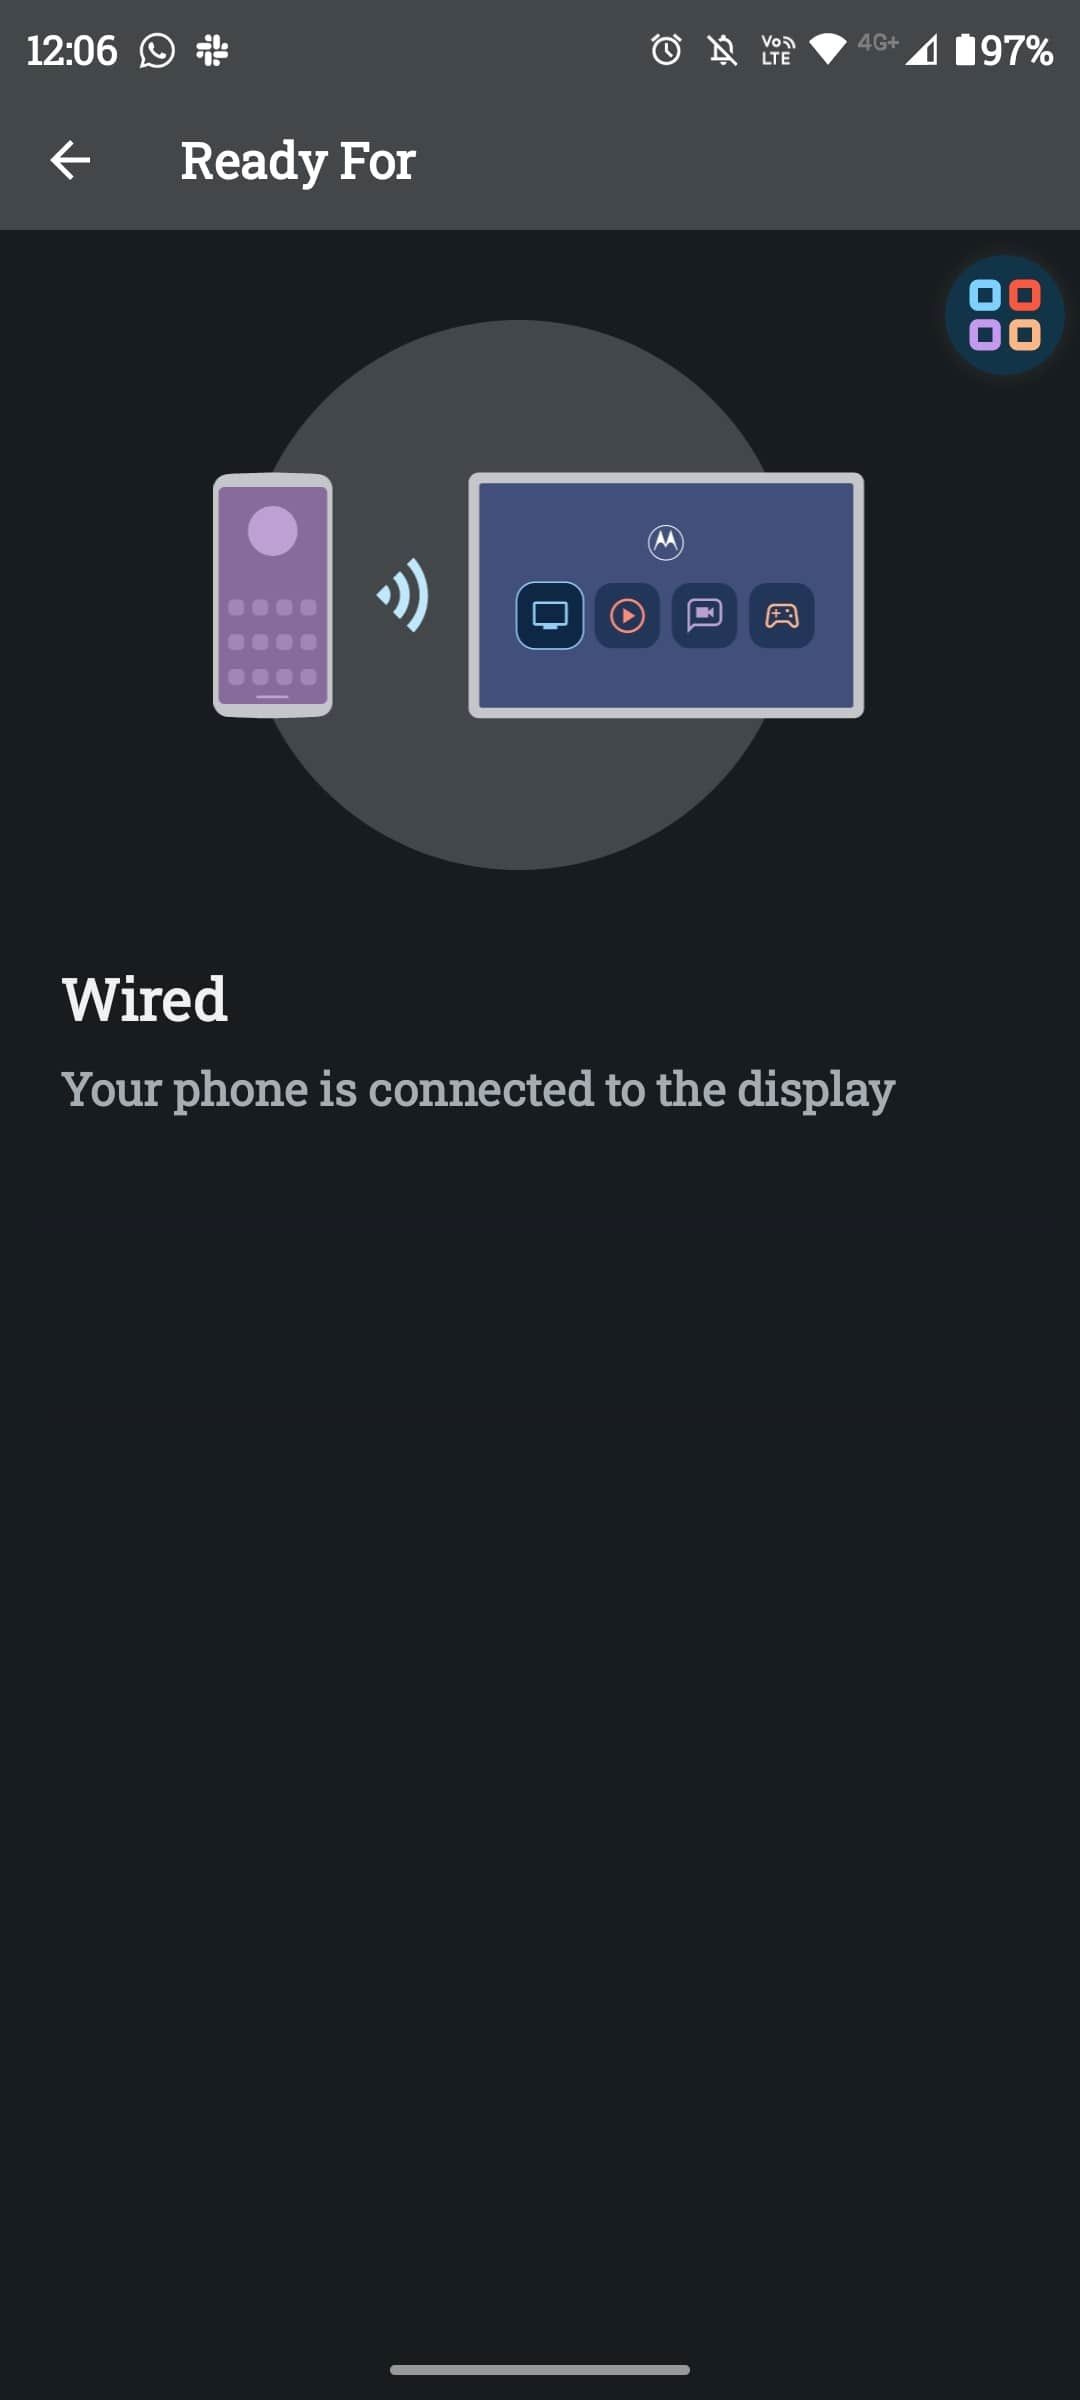 Tangkapan layar Android menunjukkan koneksi yang berhasil antara ponsel dan layar